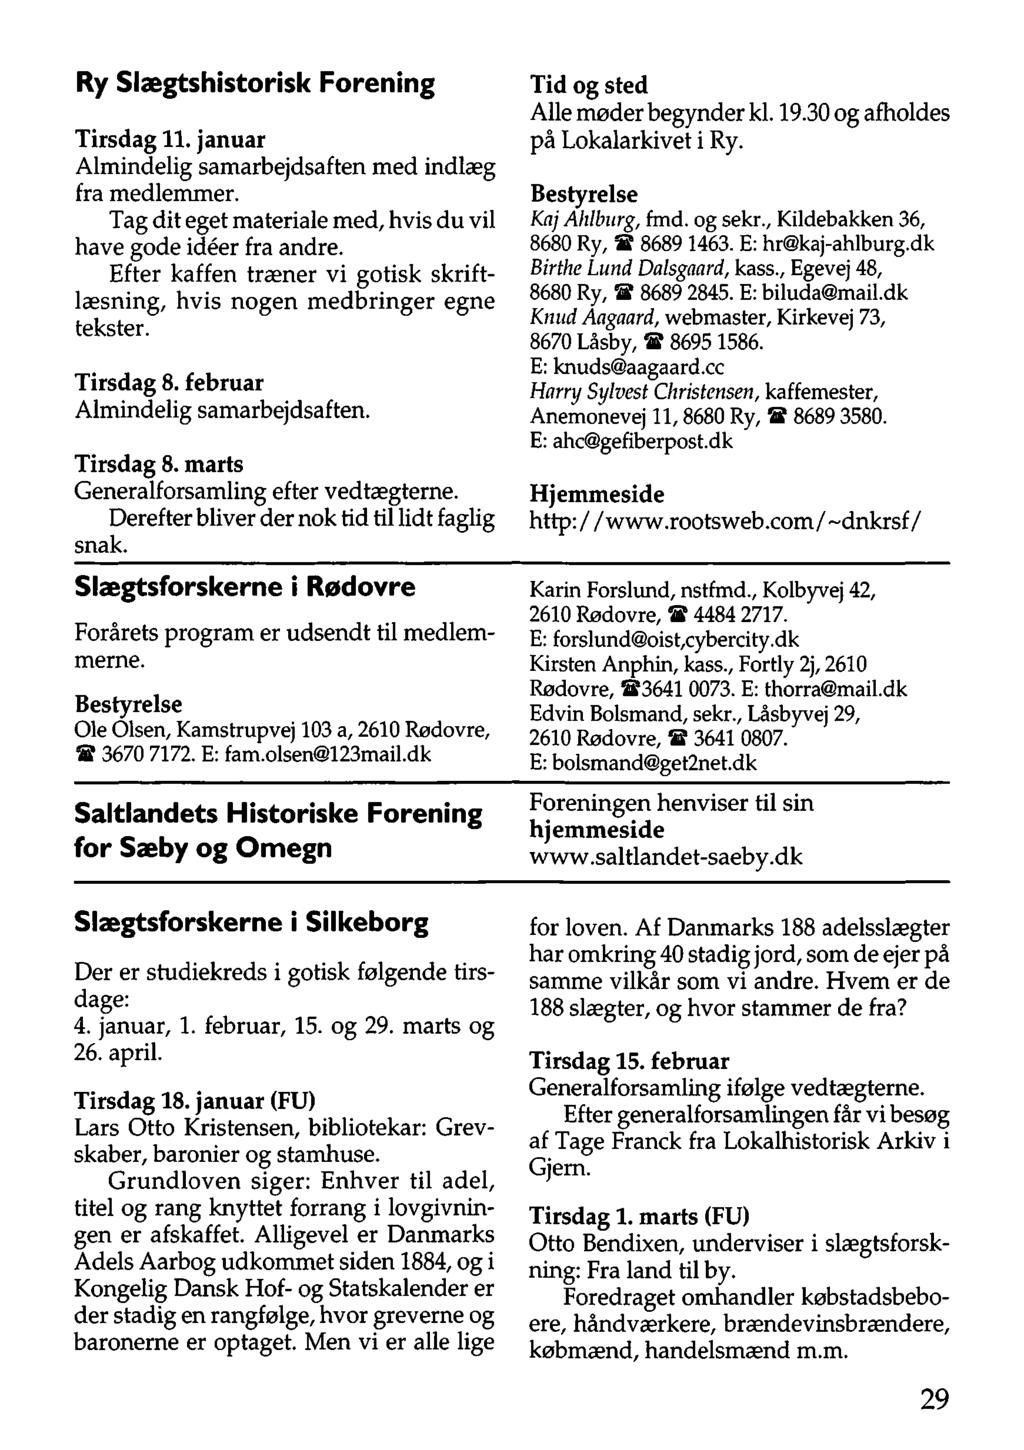 SLÆGTSFORSKERNES BIBLIOTEK - PDF Free Download